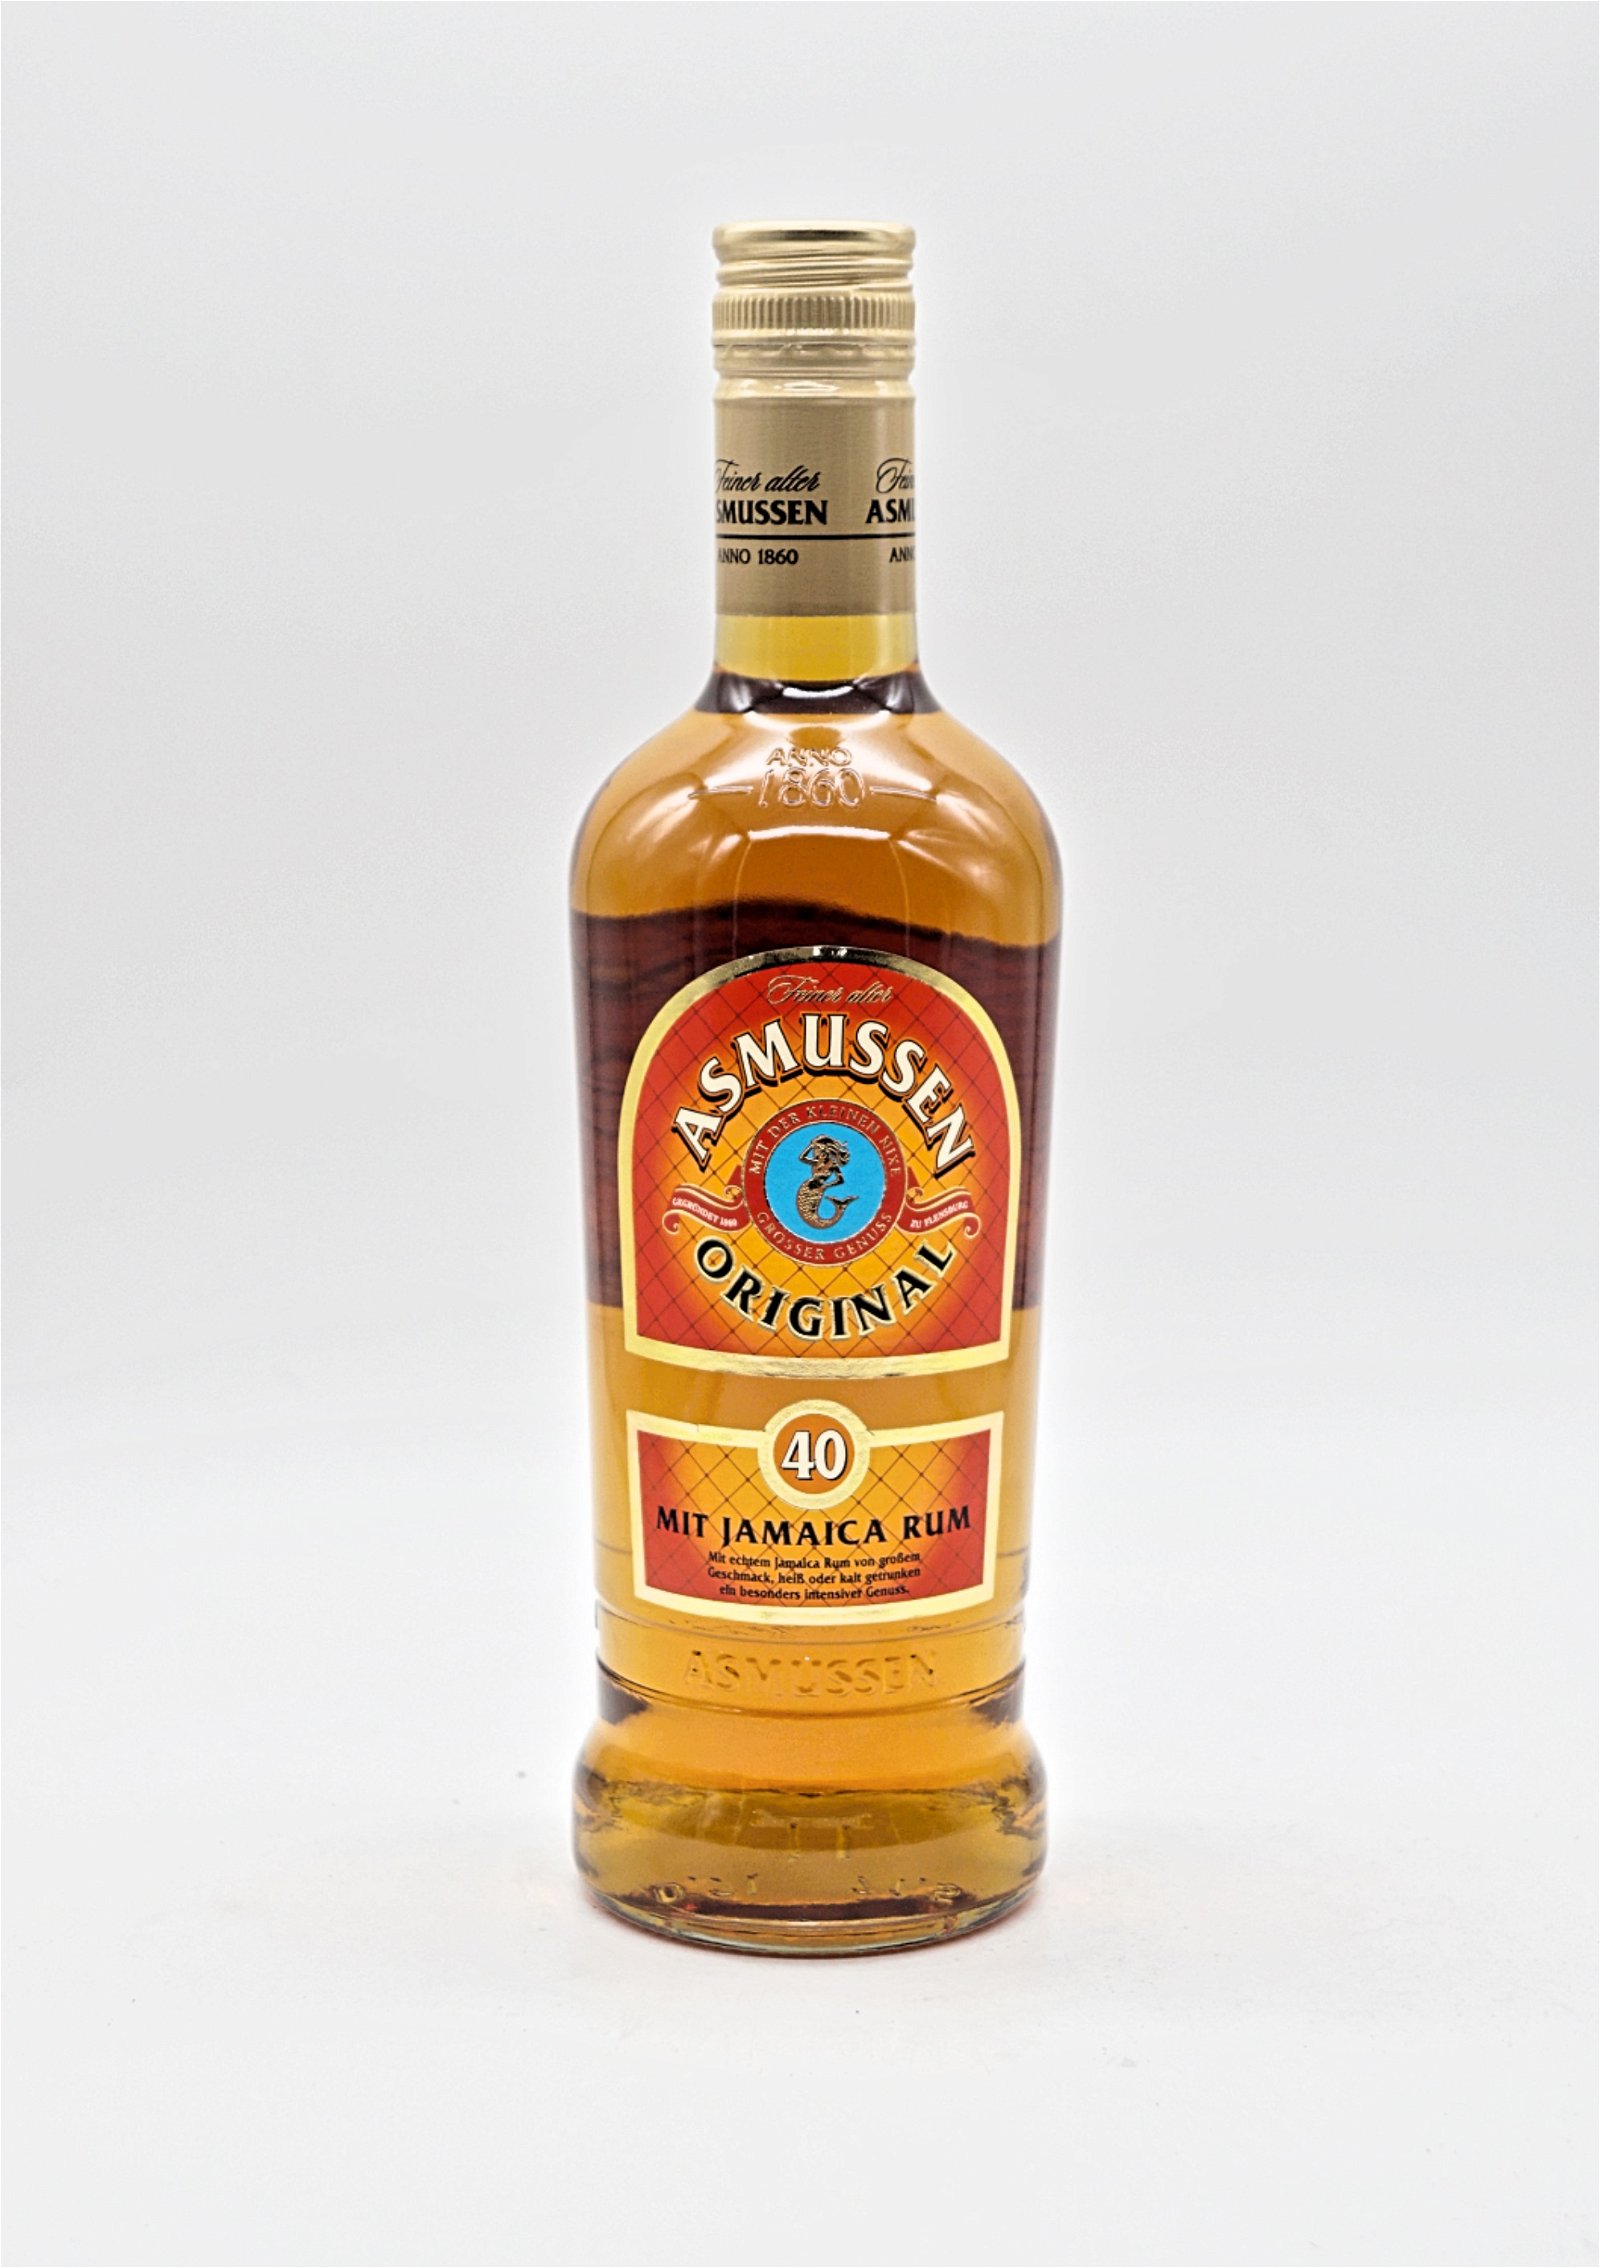 Asmussen Original Mit Jamaica Rum